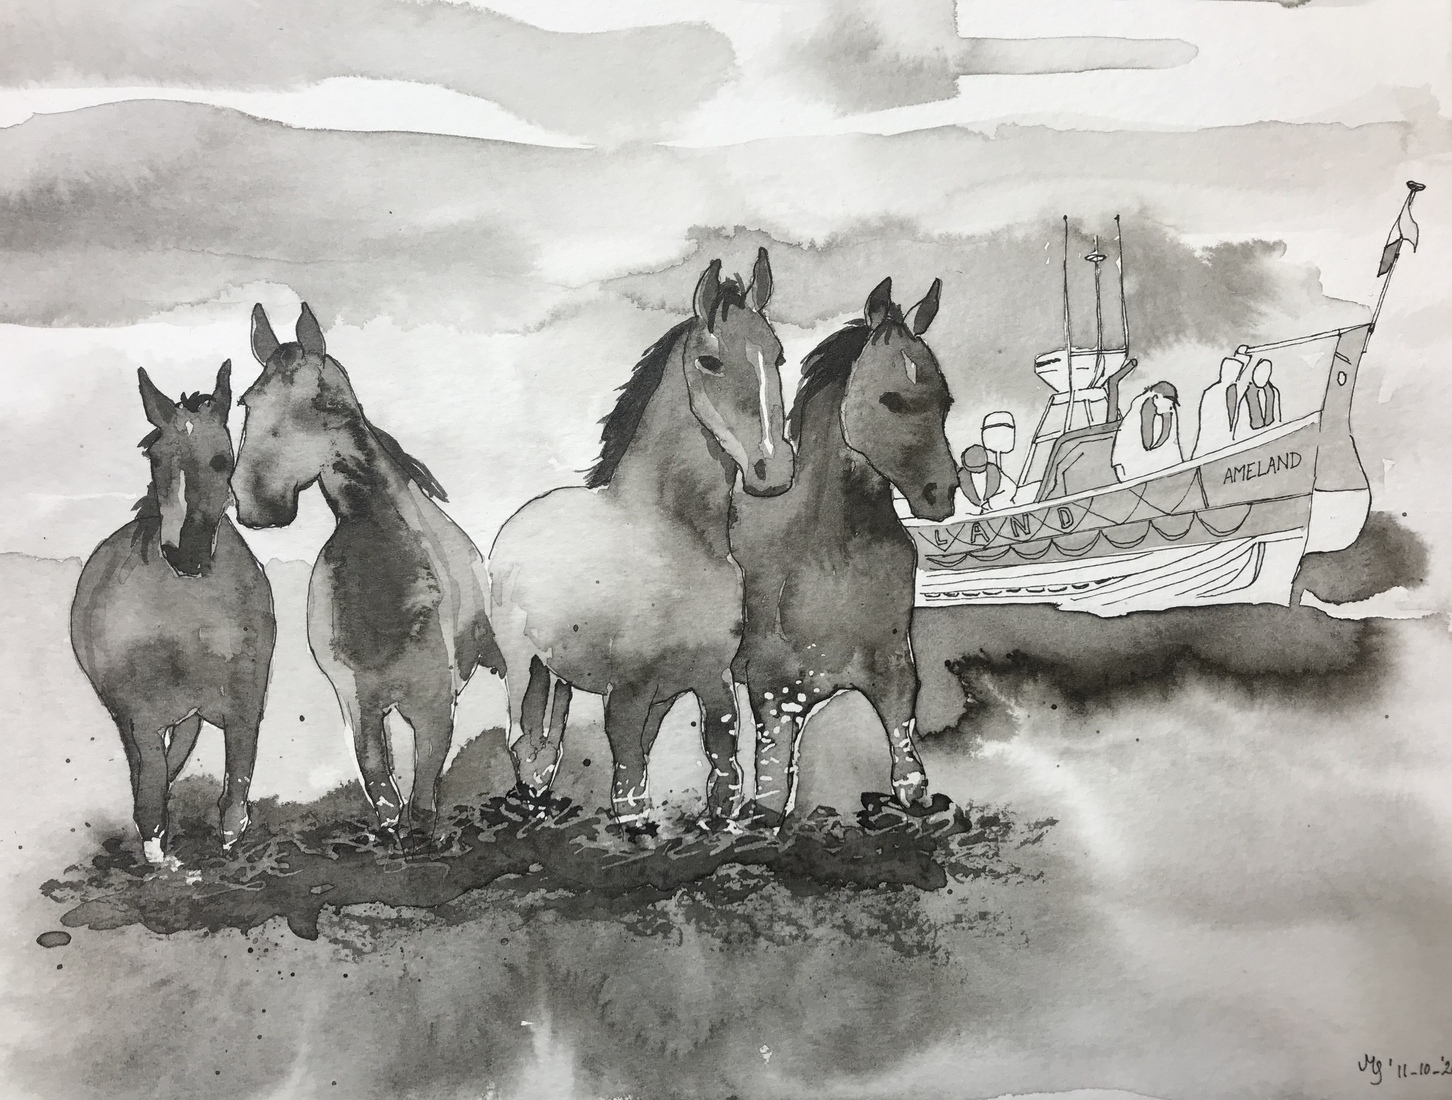 Paarden reddingboot Ameland